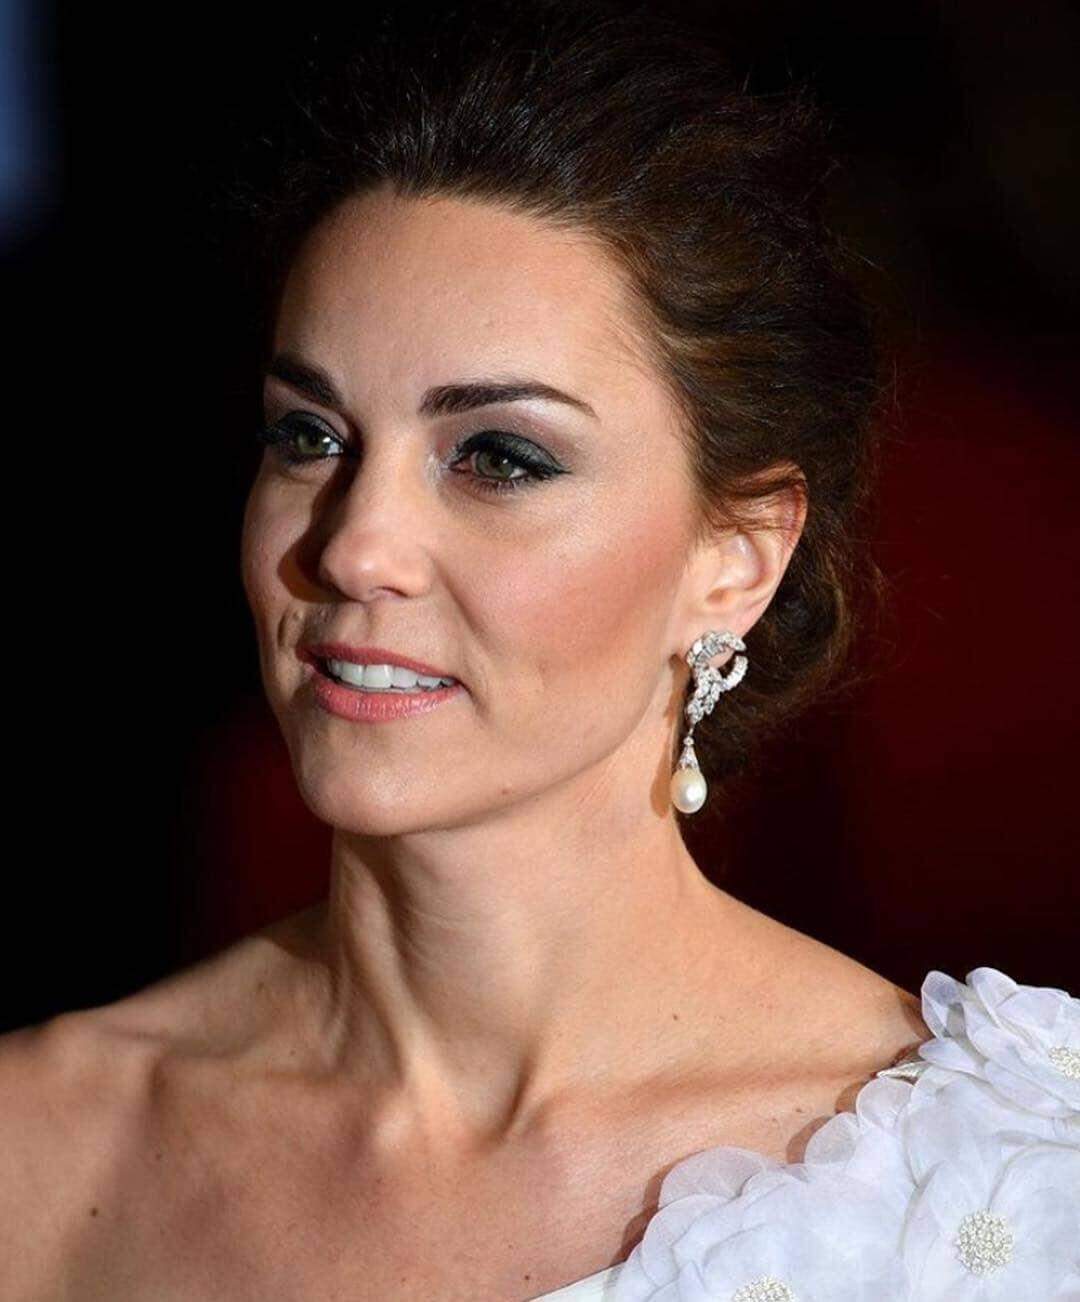 Príncipe William e Kate Middleton deslumbram no BAFTA Film Awards 2019